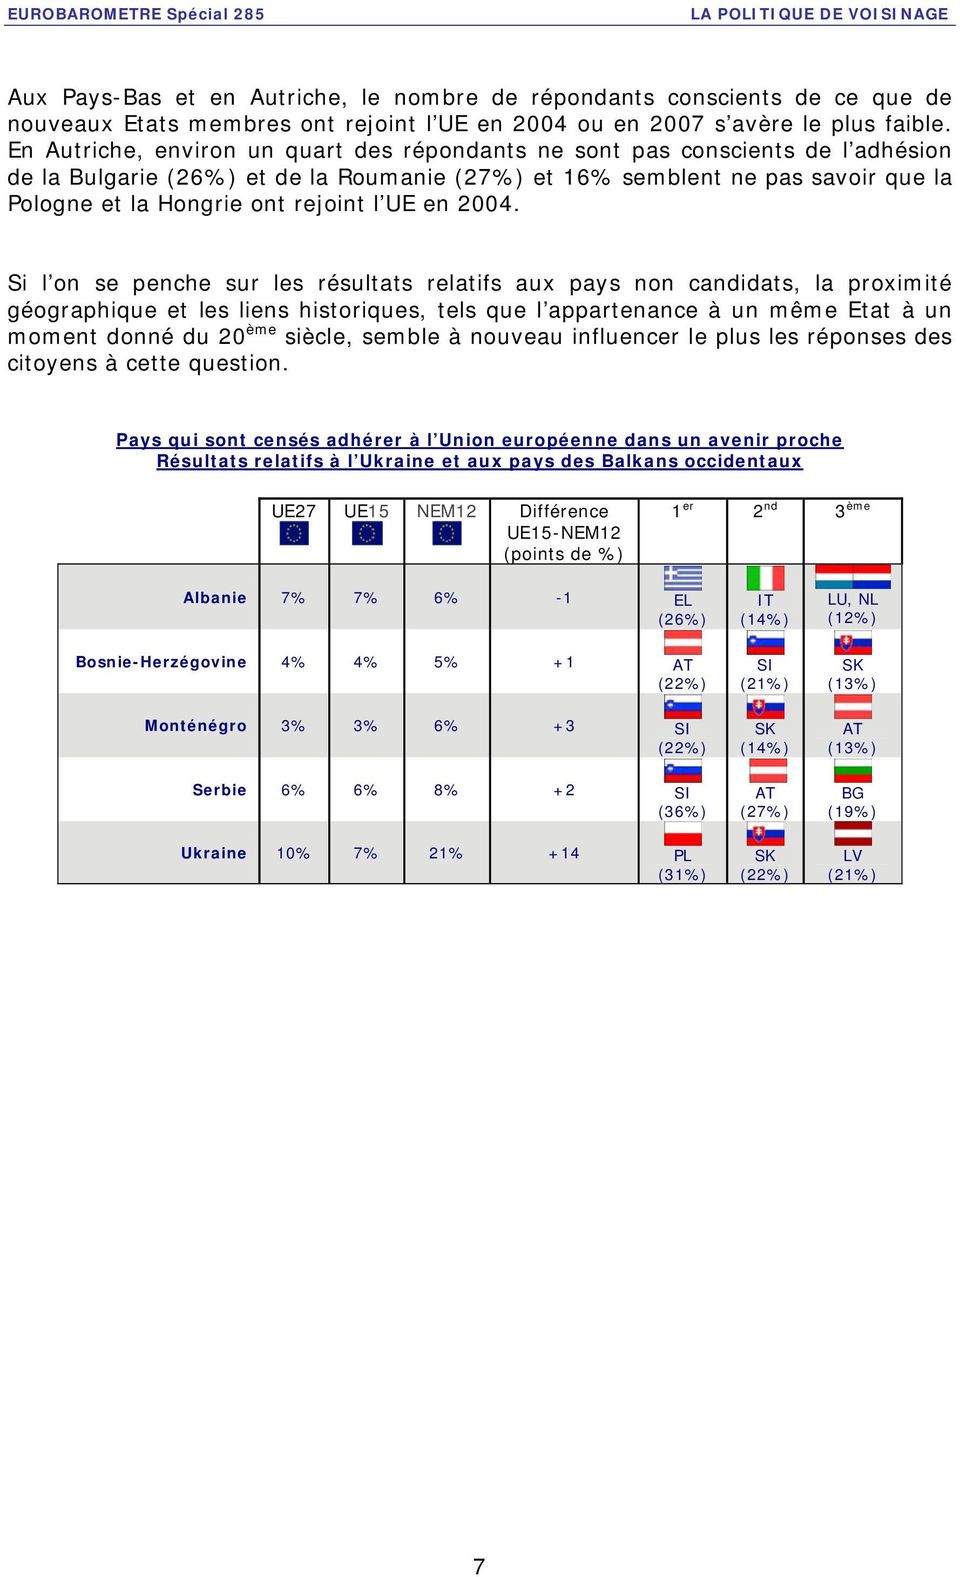 En Autriche, environ un quart des répondants ne sont pas conscients de l adhésion de la Bulgarie (26%) et de la Roumanie (27%) et 16% semblent ne pas savoir que la Pologne et la Hongrie ont rejoint l